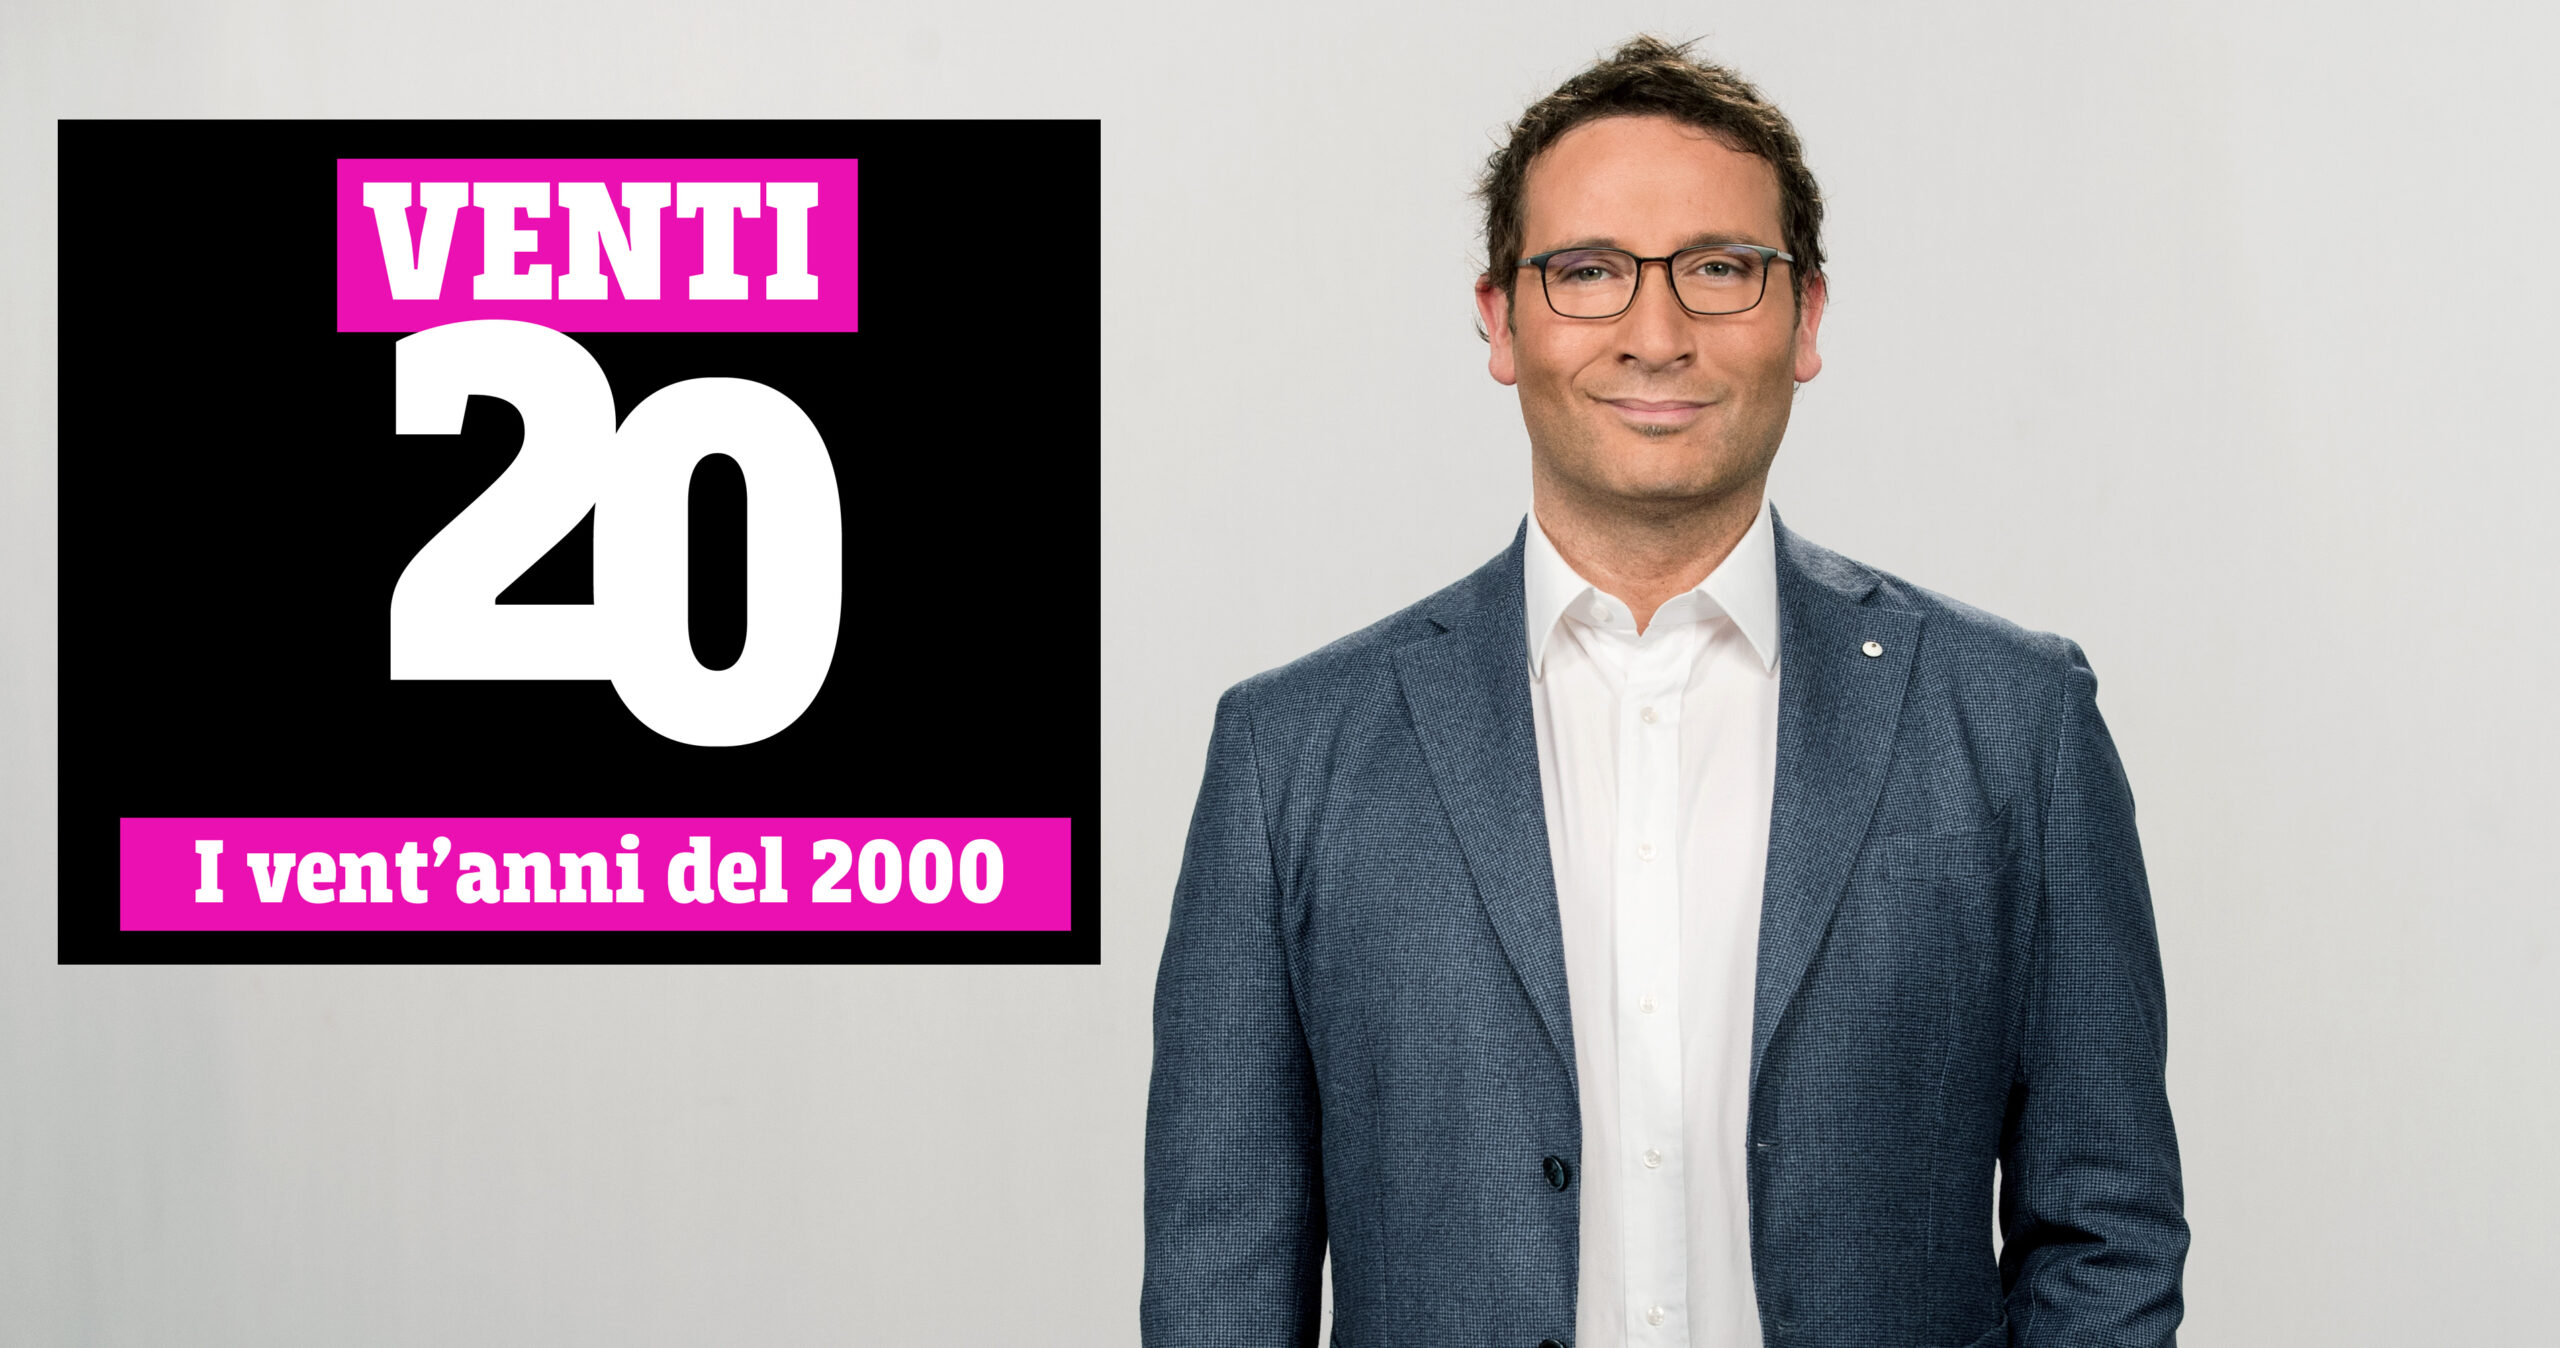 Venti20, I vent'anni del 2000 su TV8 con Alessio Viola